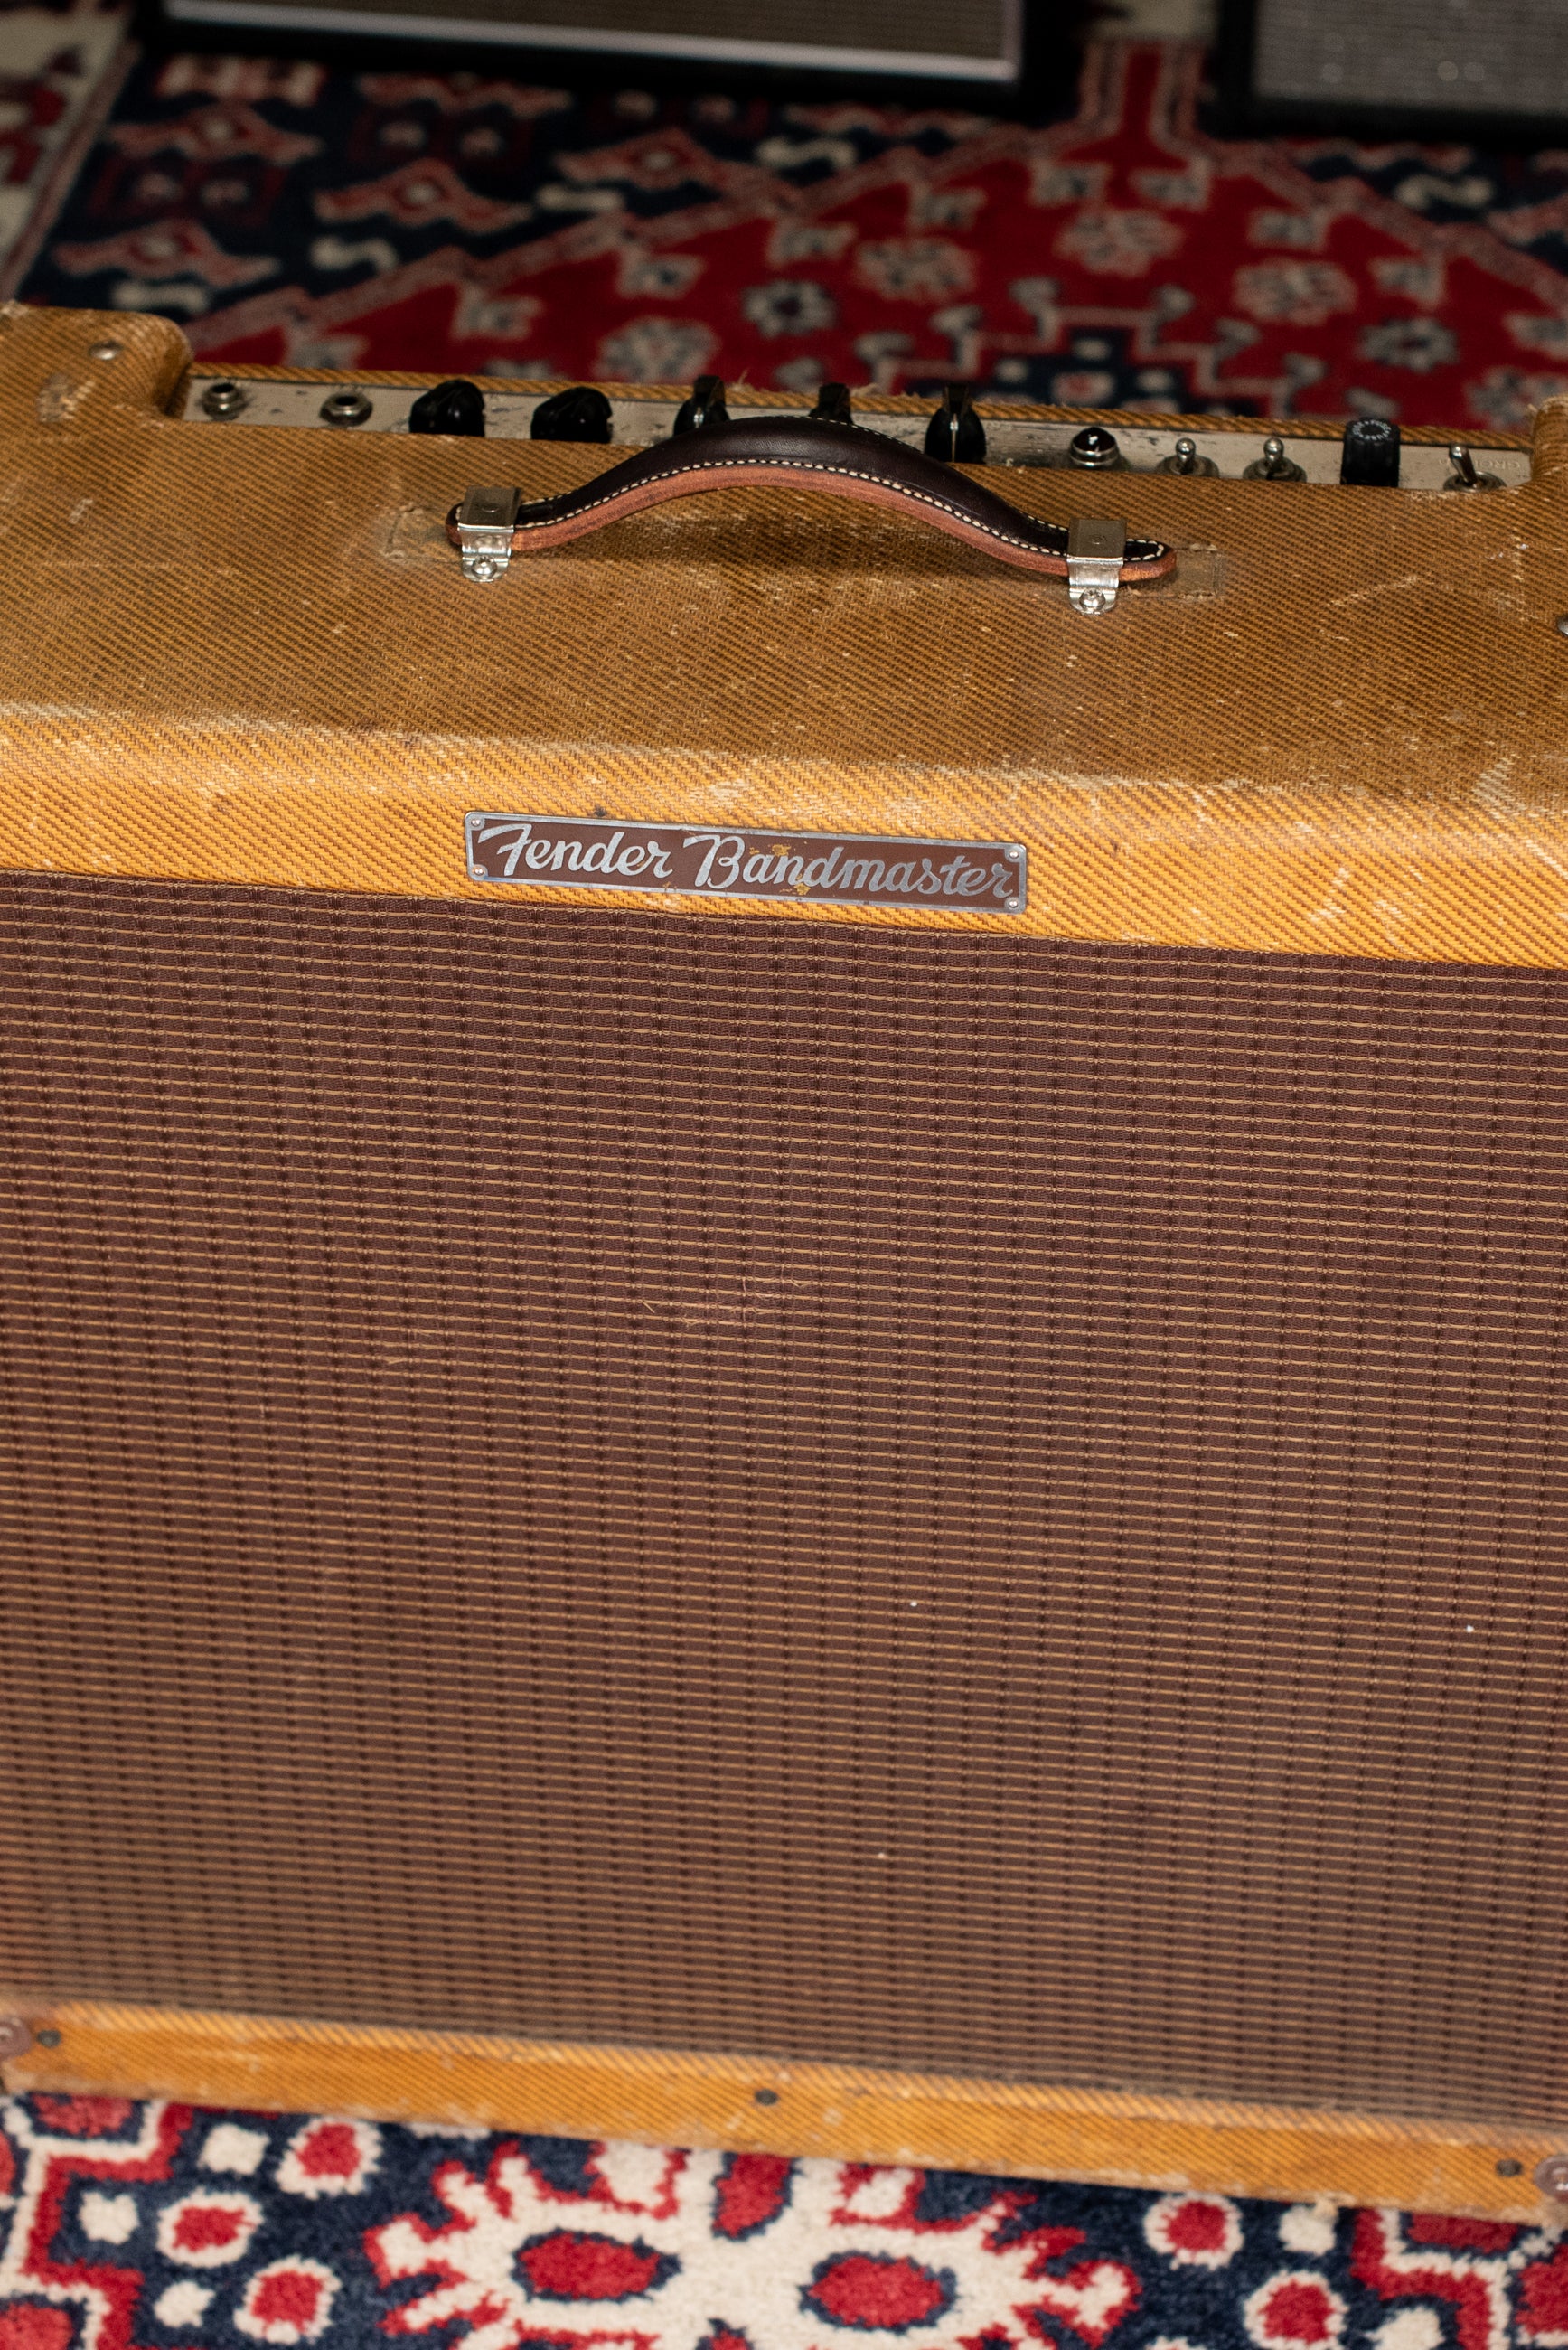 Vintage Tweed Fender Bandmaster guitar amp